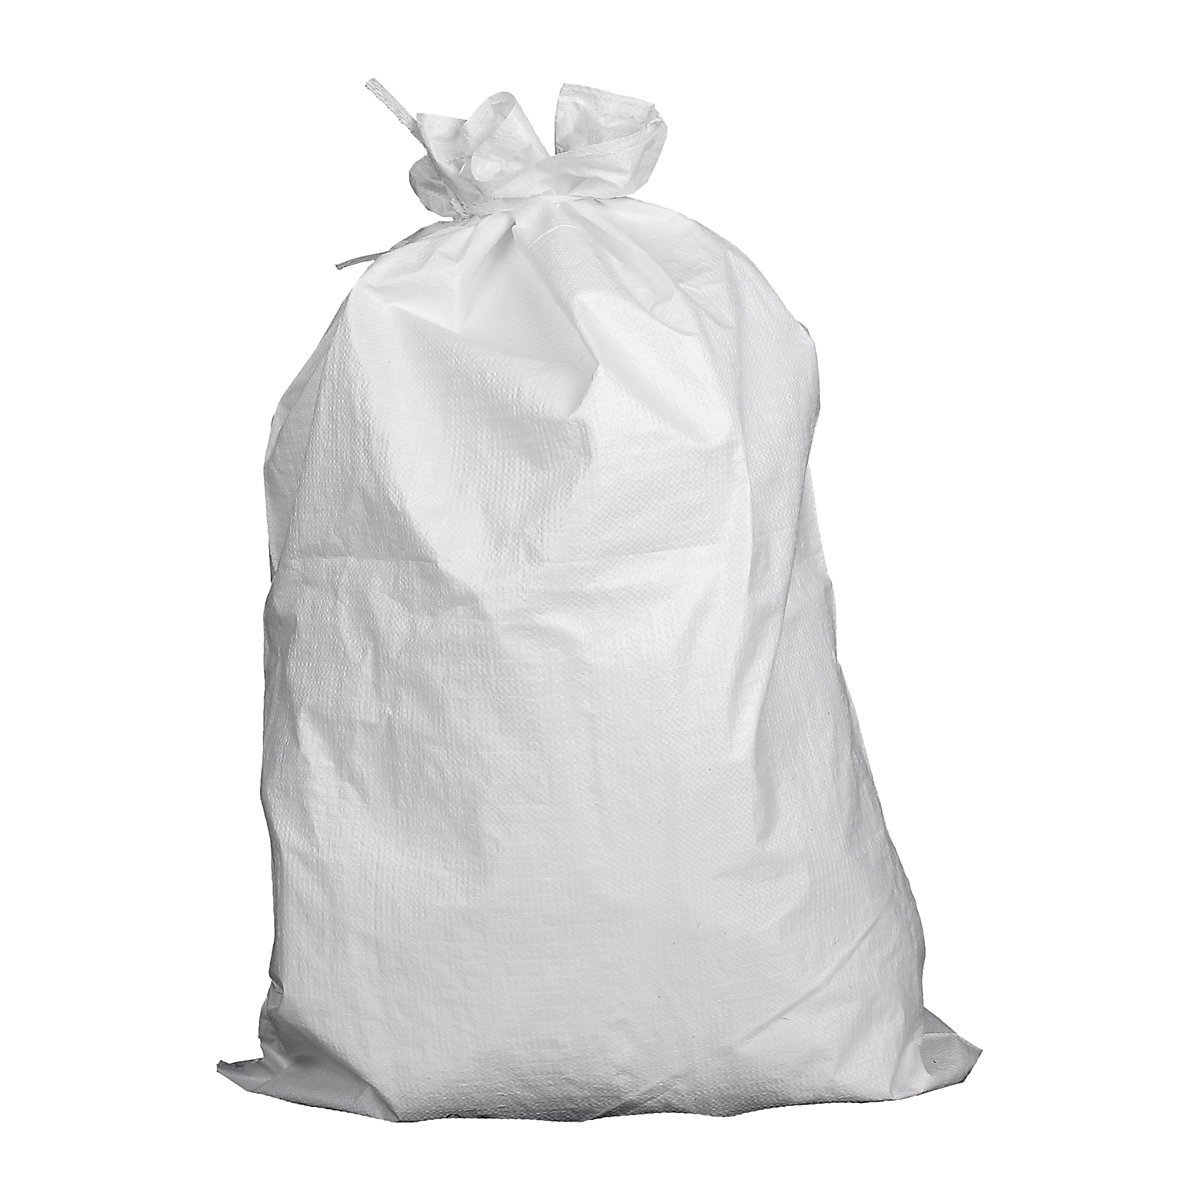 PP fabric bag